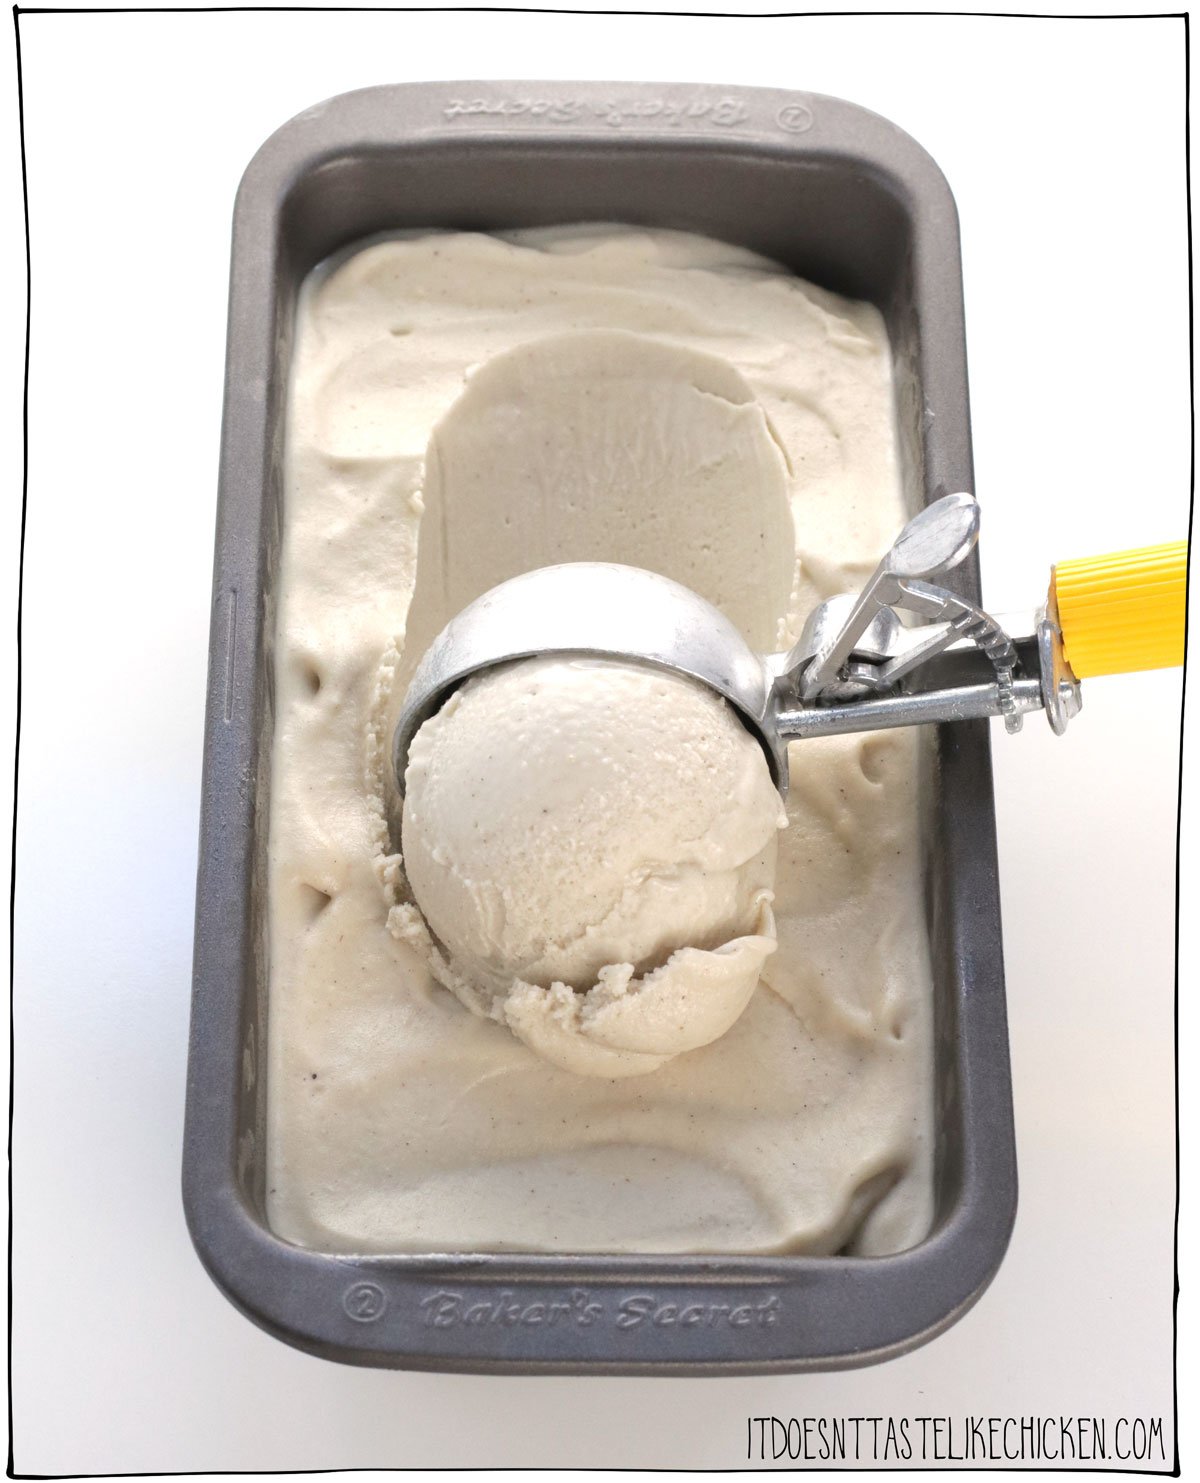 Vous pouvez faire des glaces maison sans sorbetière !  Cette méthode sans baratte ne nécessite que deux outils, un bac à glaçons et un mixeur.  Utilisez cette technique simple avec n'importe quelle recette de crème glacée maison pour faire une crème glacée maison crémeuse en un clin d'œil !  #ça n'a pas le goût du poulet #glace